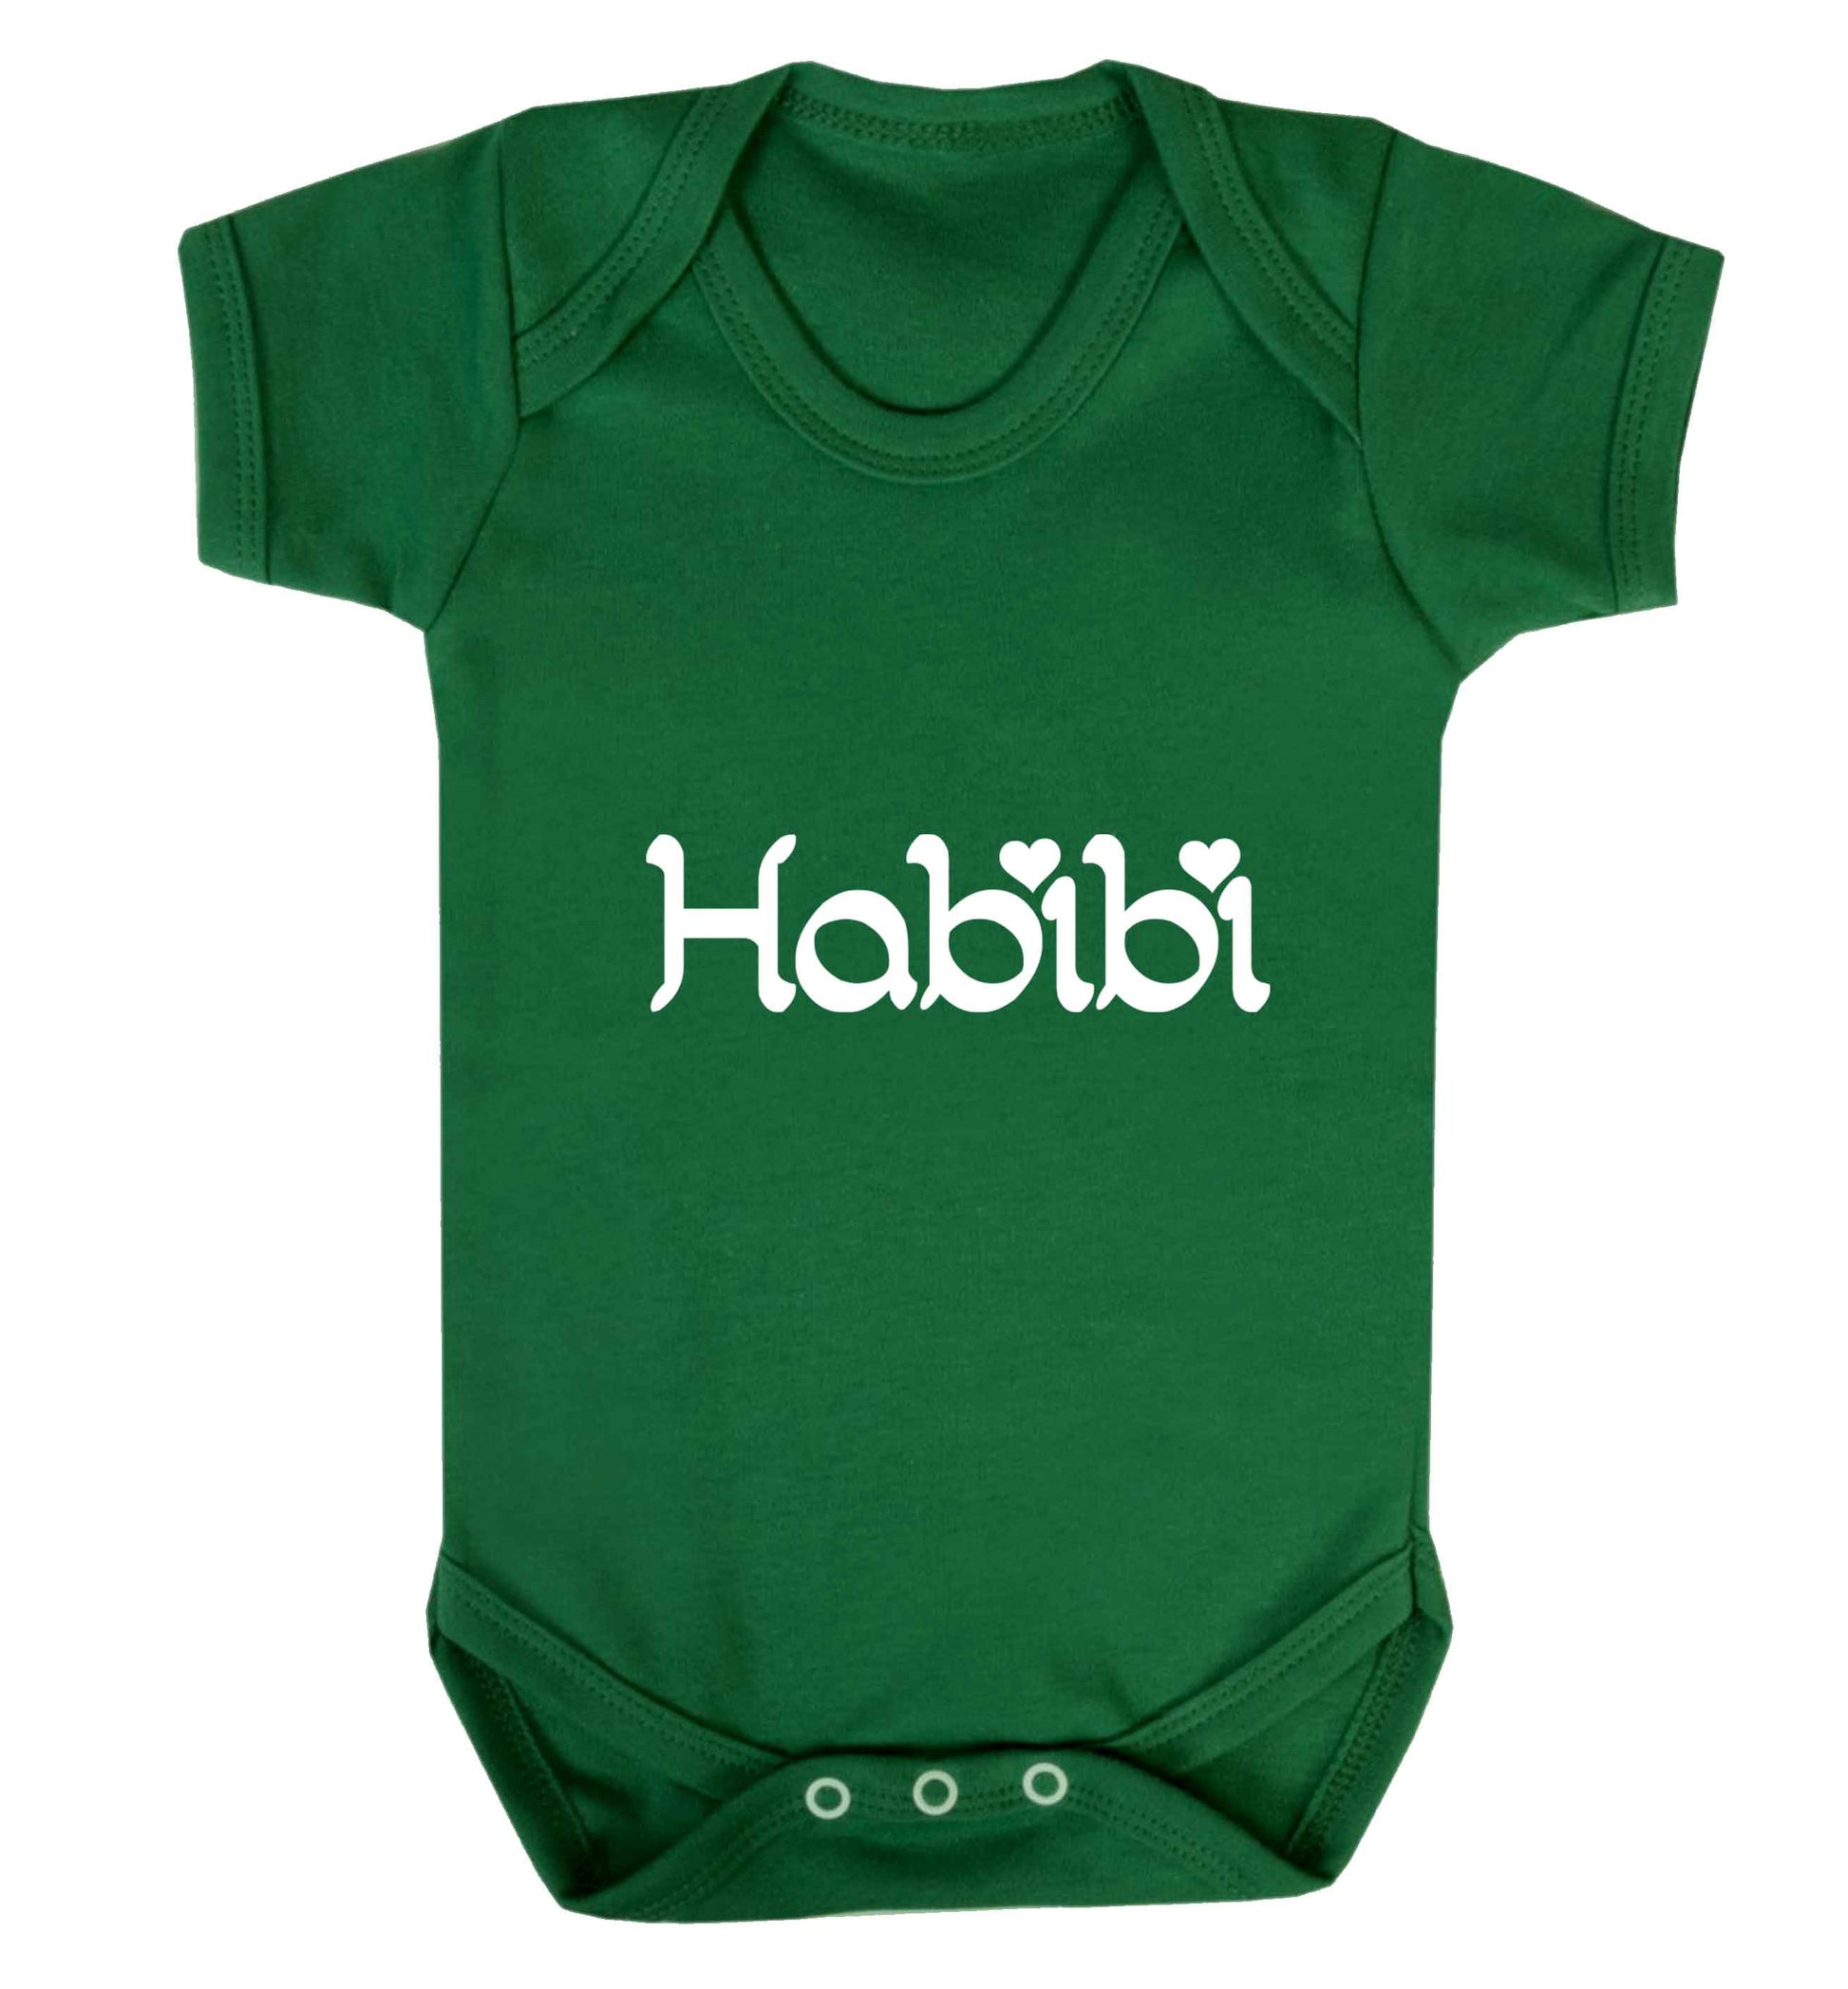 Habibi baby vest green 18-24 months